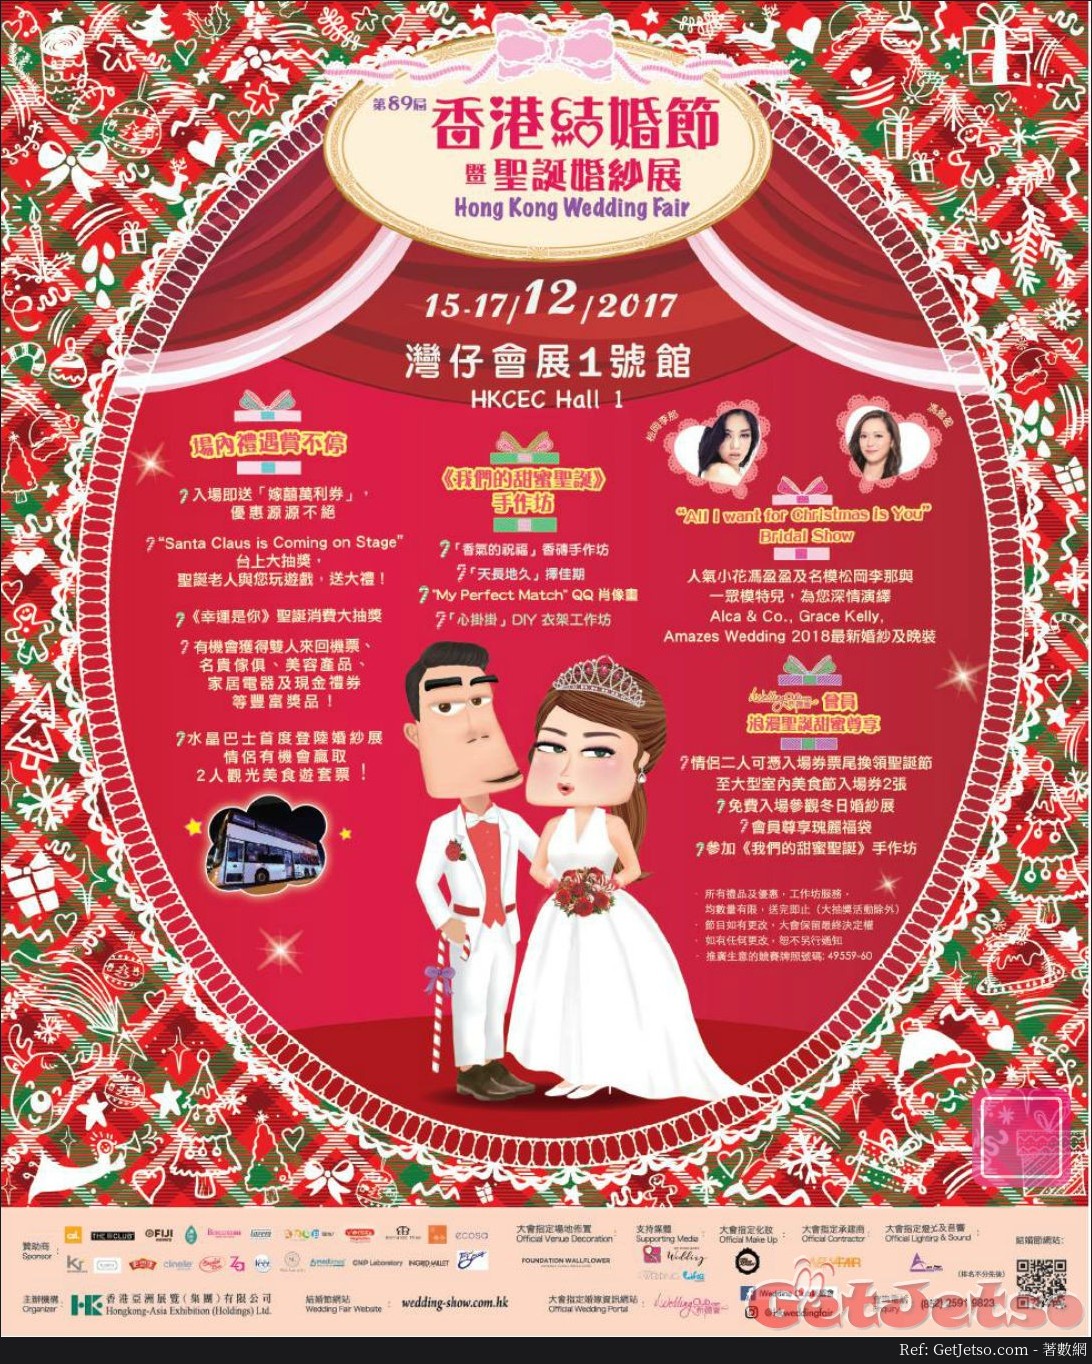 第89屆香港結婚節暨聖誕婚紗展(17年12月15-17日)圖片1